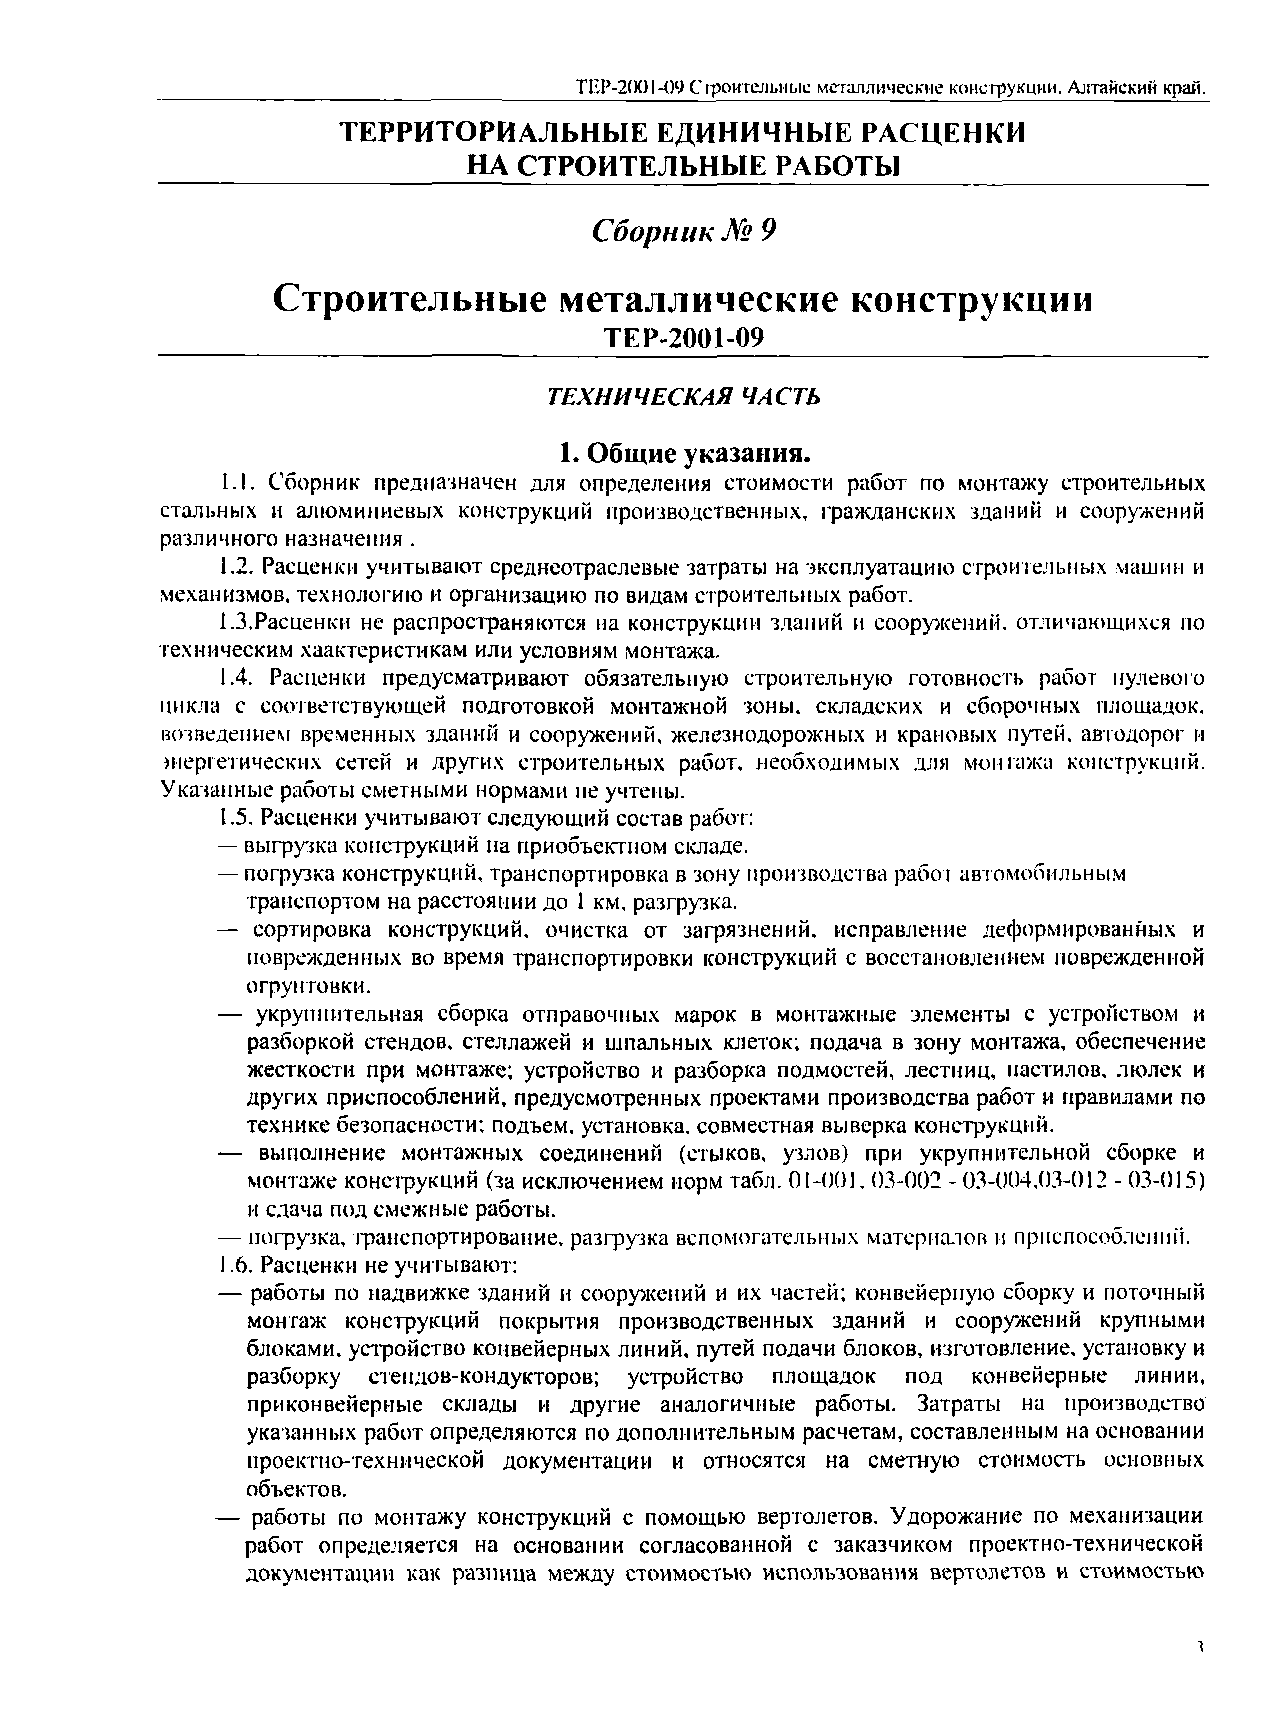 ТЕР Алтайский край 2001-09